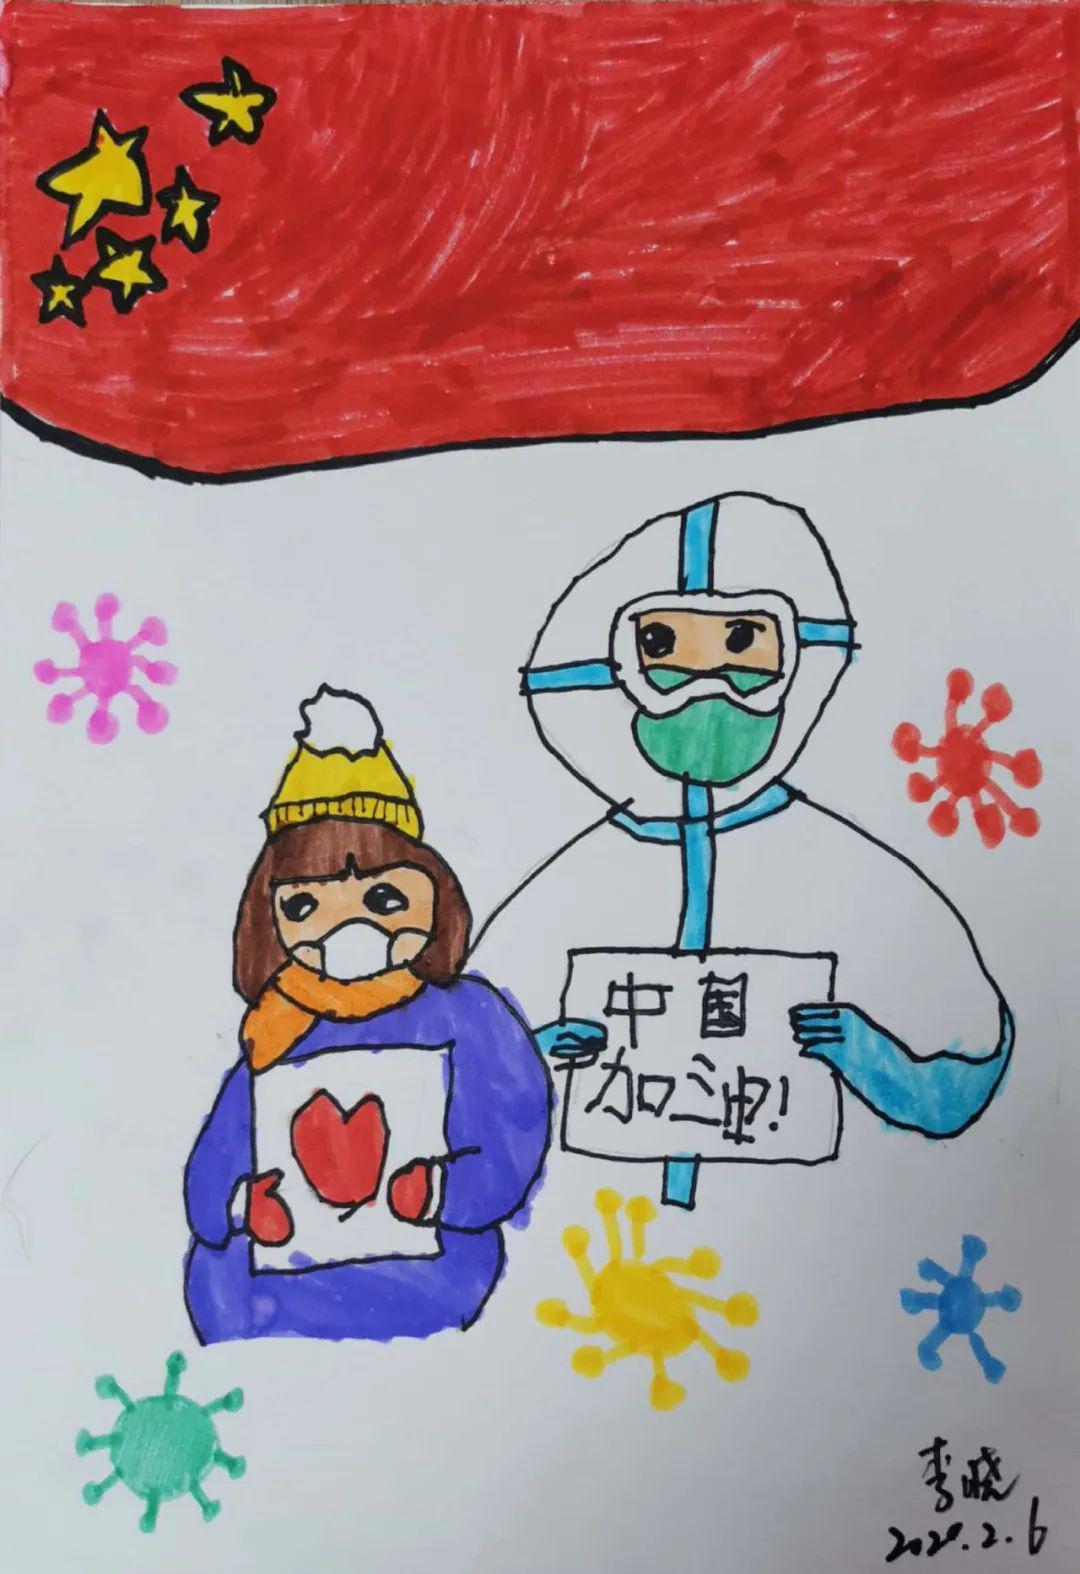 "童心聚力同抗疫"——南京市少年儿童绘画征集活动作品选(40)